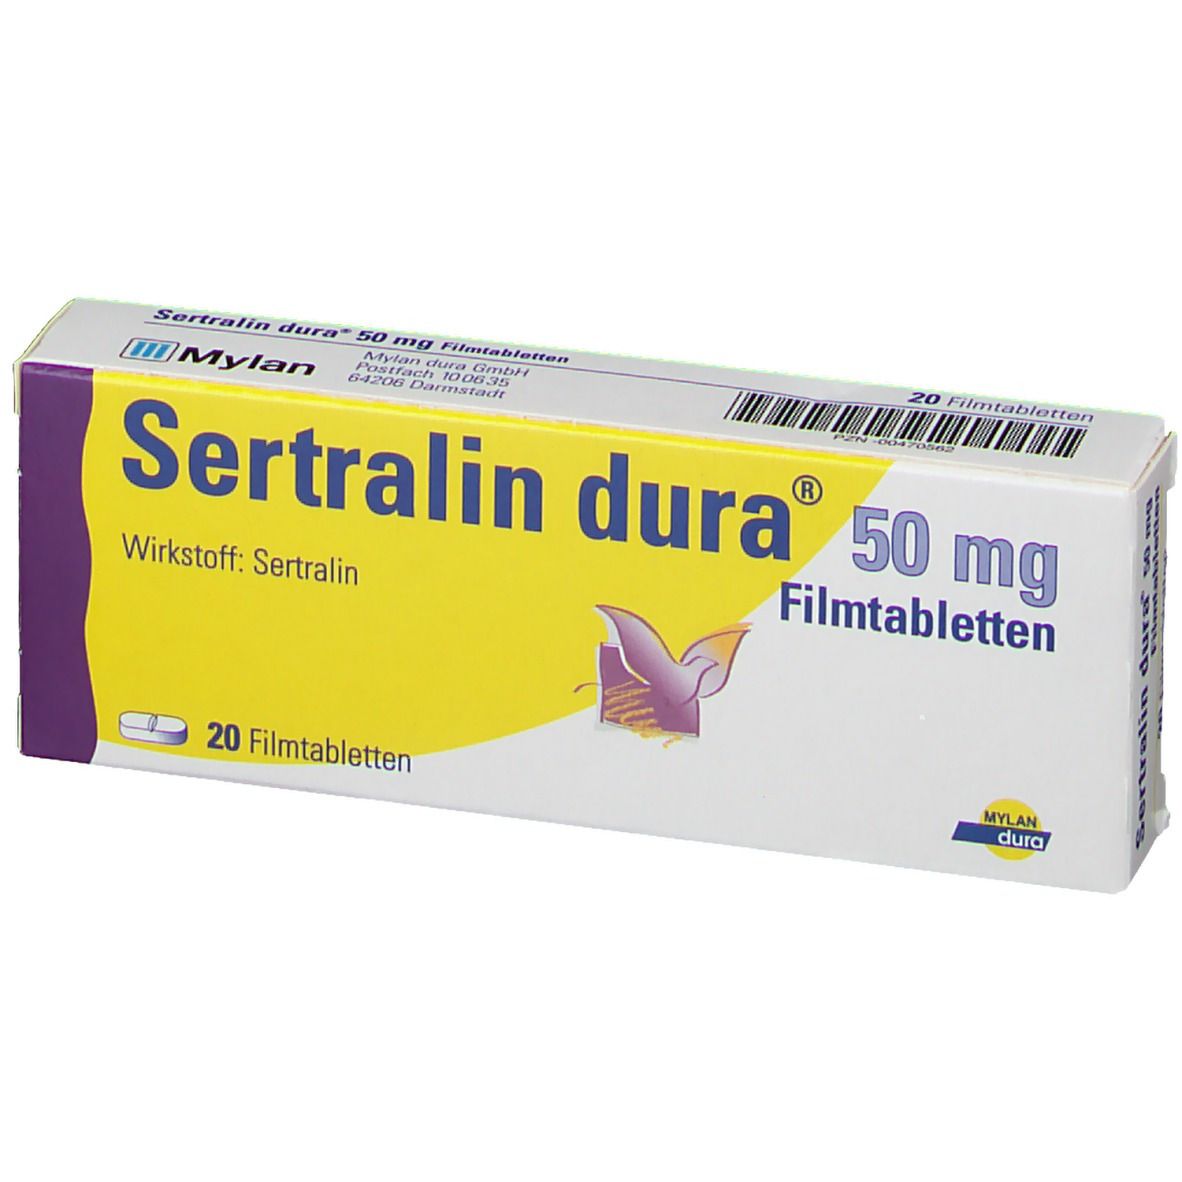 Sertralin dura® 50 mg